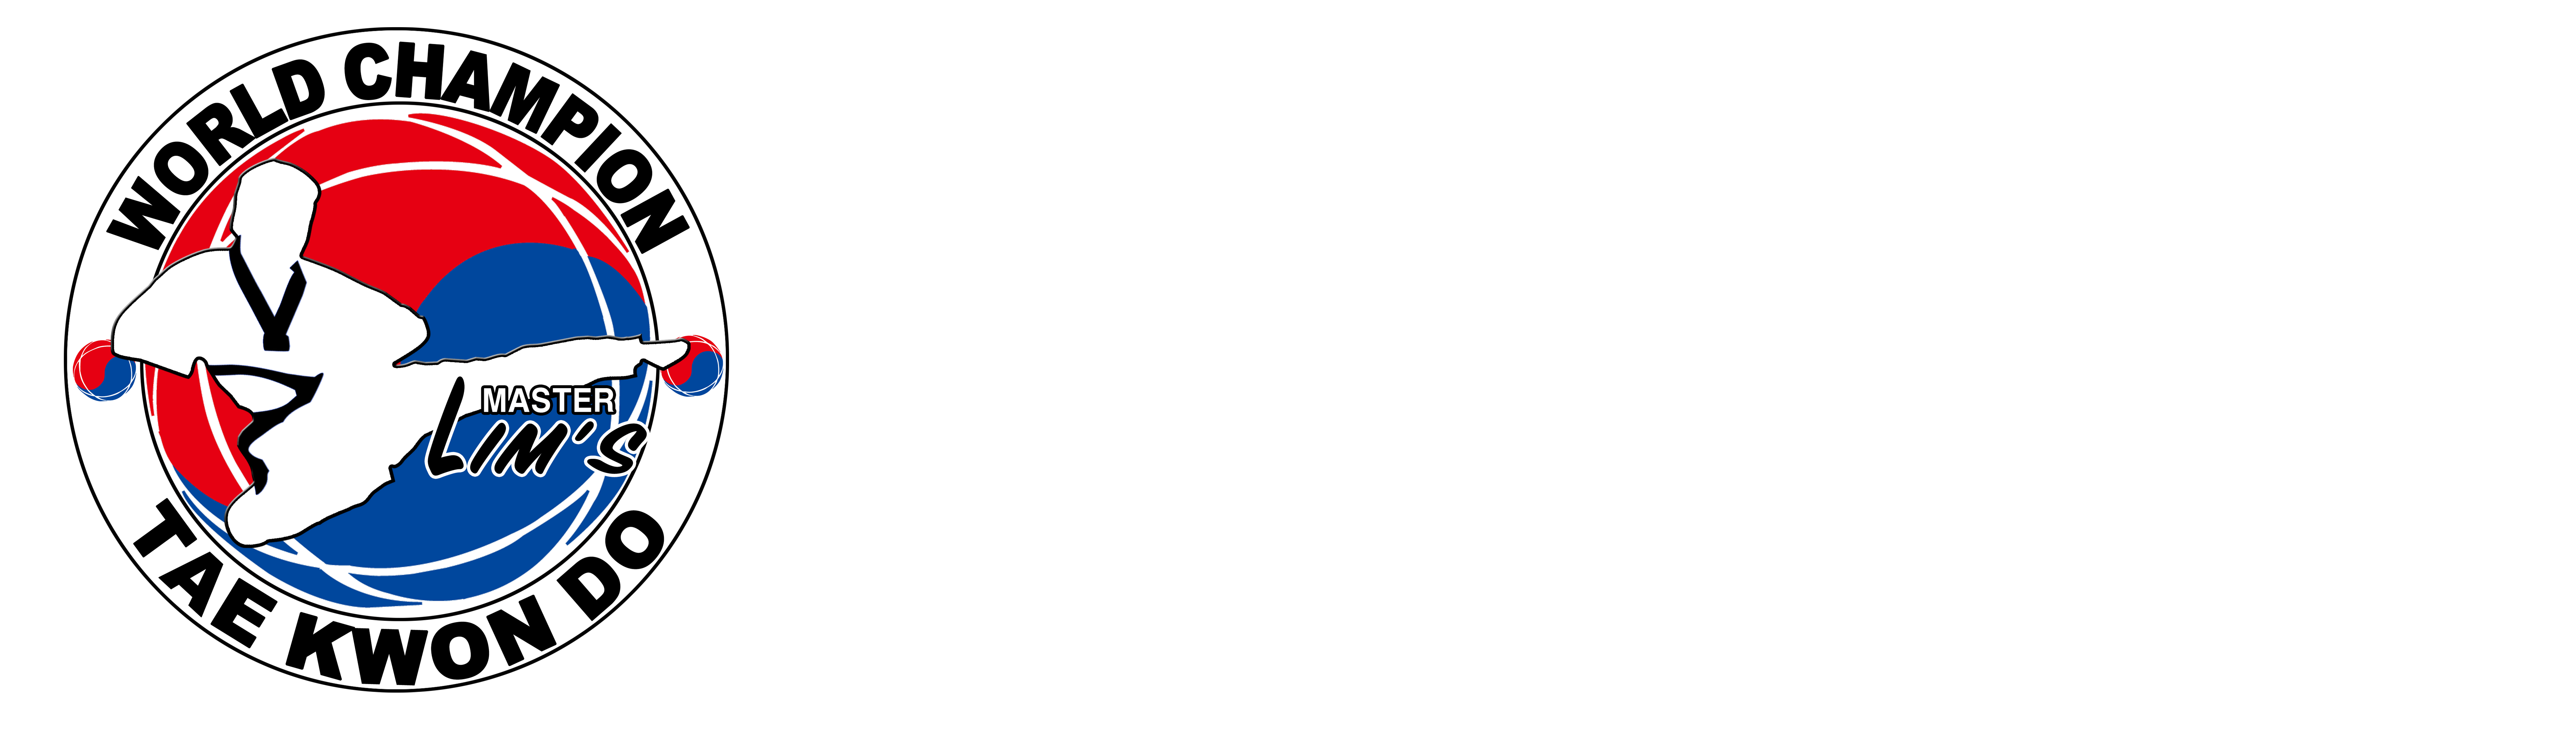 Master Lim's World Champion Tae Kwon Do